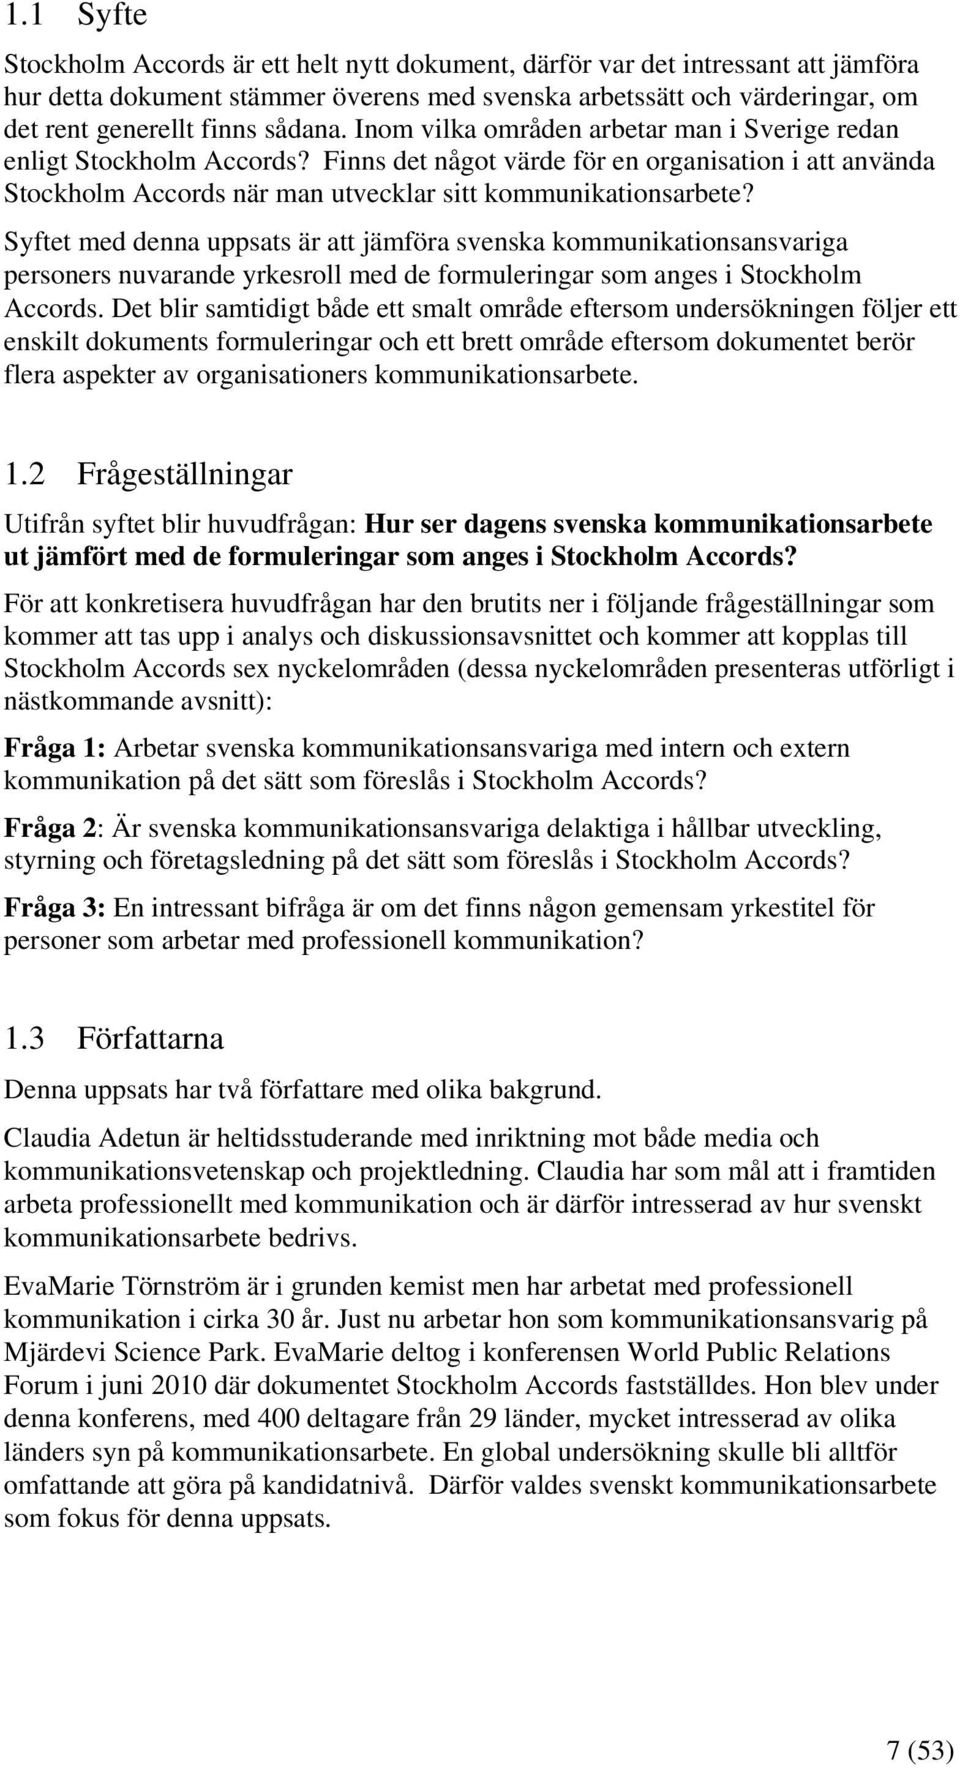 Syftet med denna uppsats är att jämföra svenska kommunikationsansvariga personers nuvarande yrkesroll med de formuleringar som anges i Stockholm Accords.